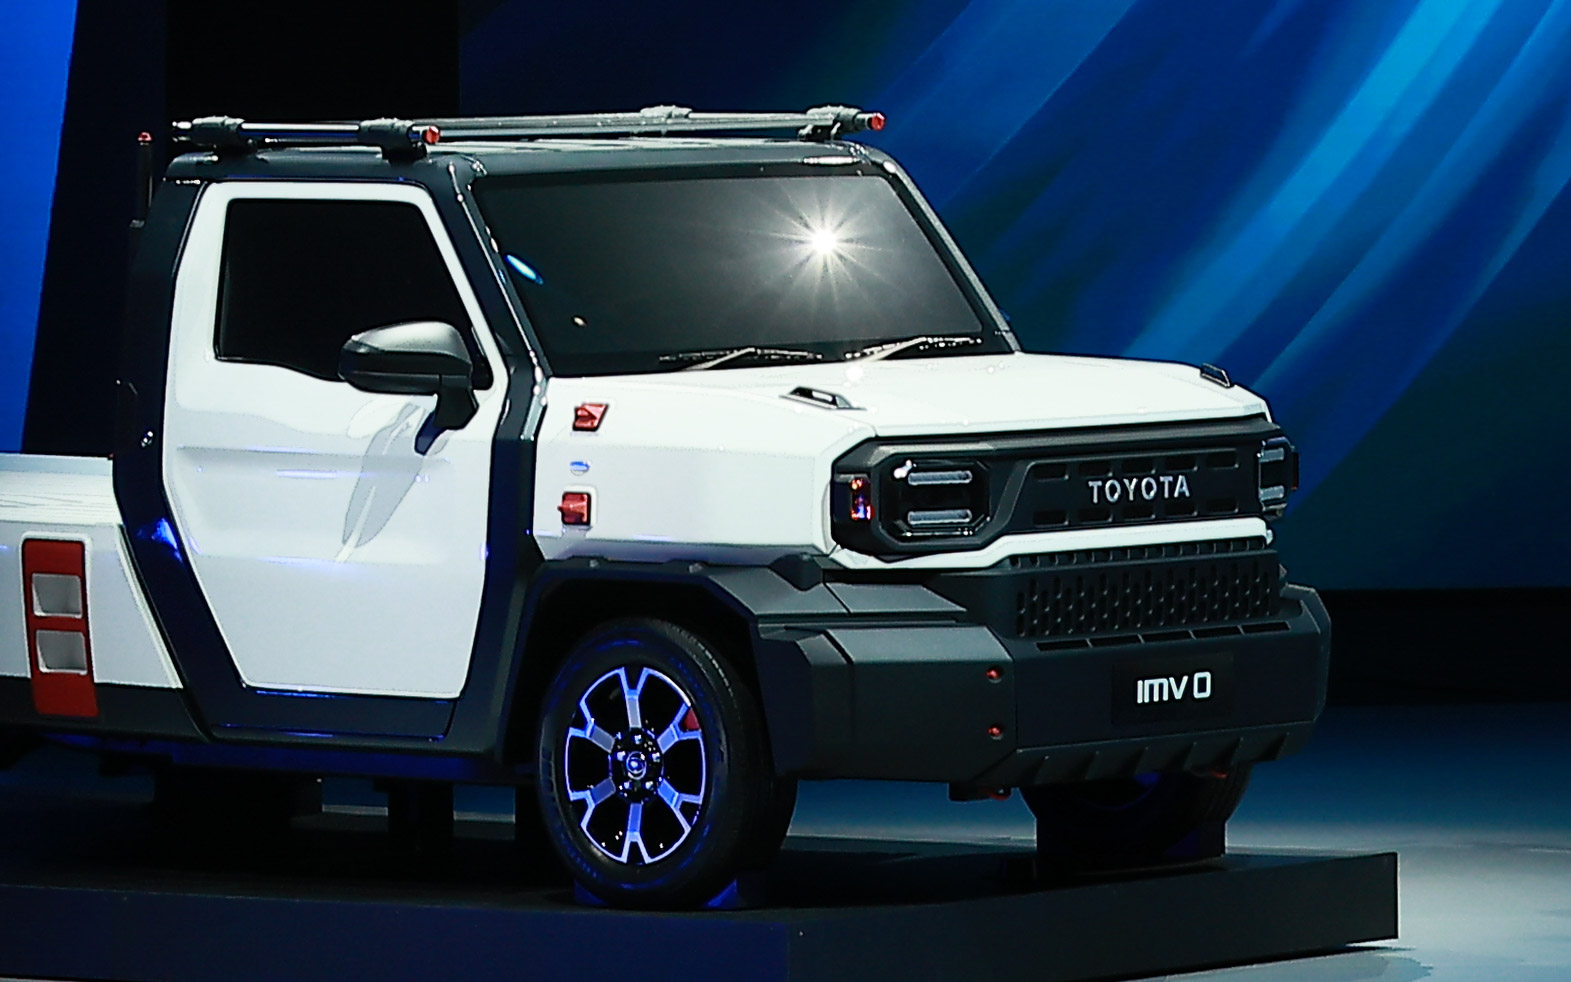 Toyota Hilux IMV 0 concept Thailand1 Paul Tan's Automotive News